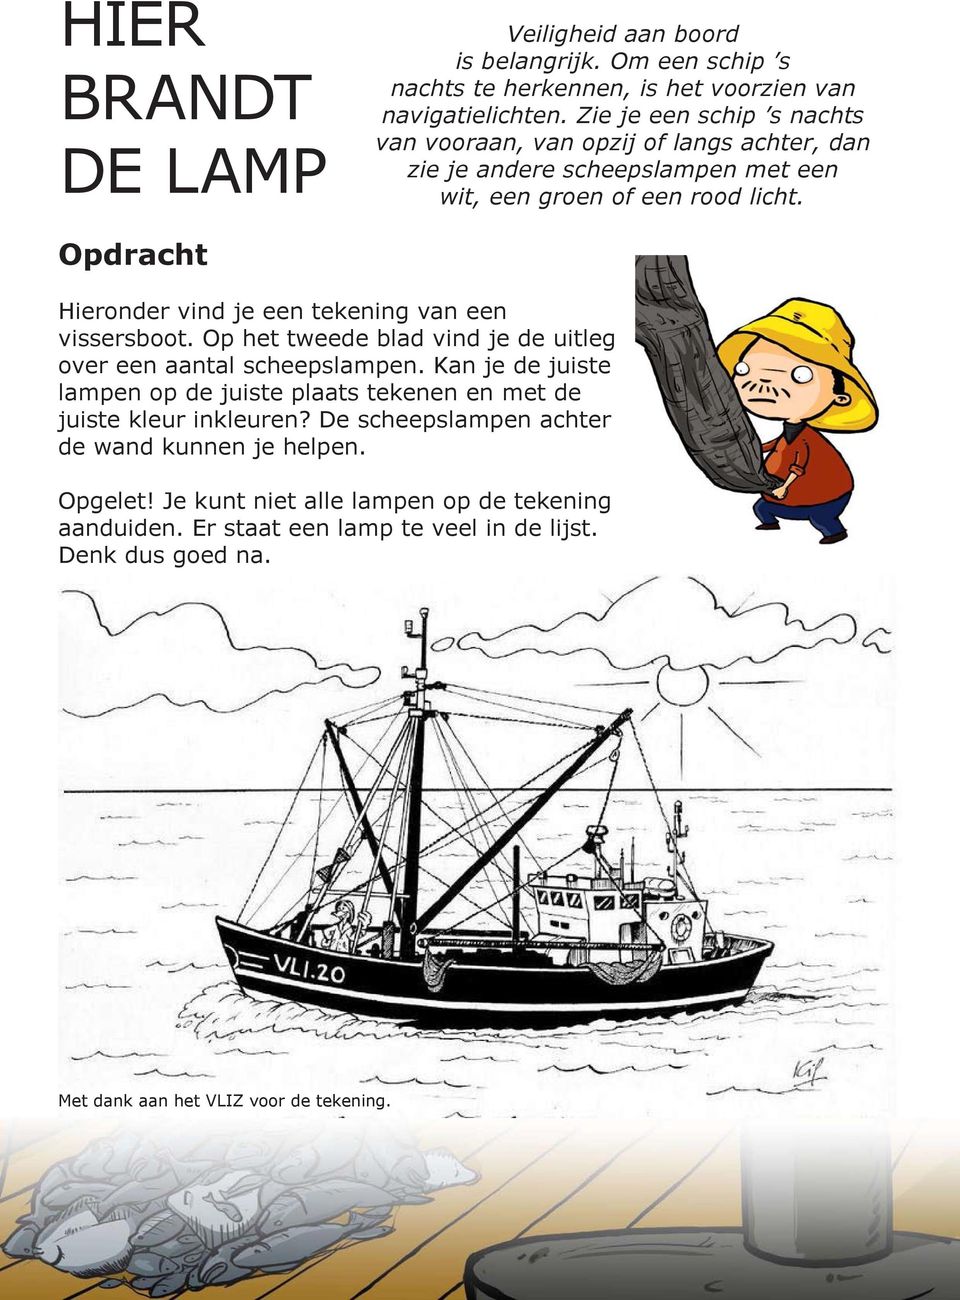 pdracht Hieronder vind je een tekening van een vissersboot. p het tweede blad vind je de uitleg over een aantal scheepslampen.